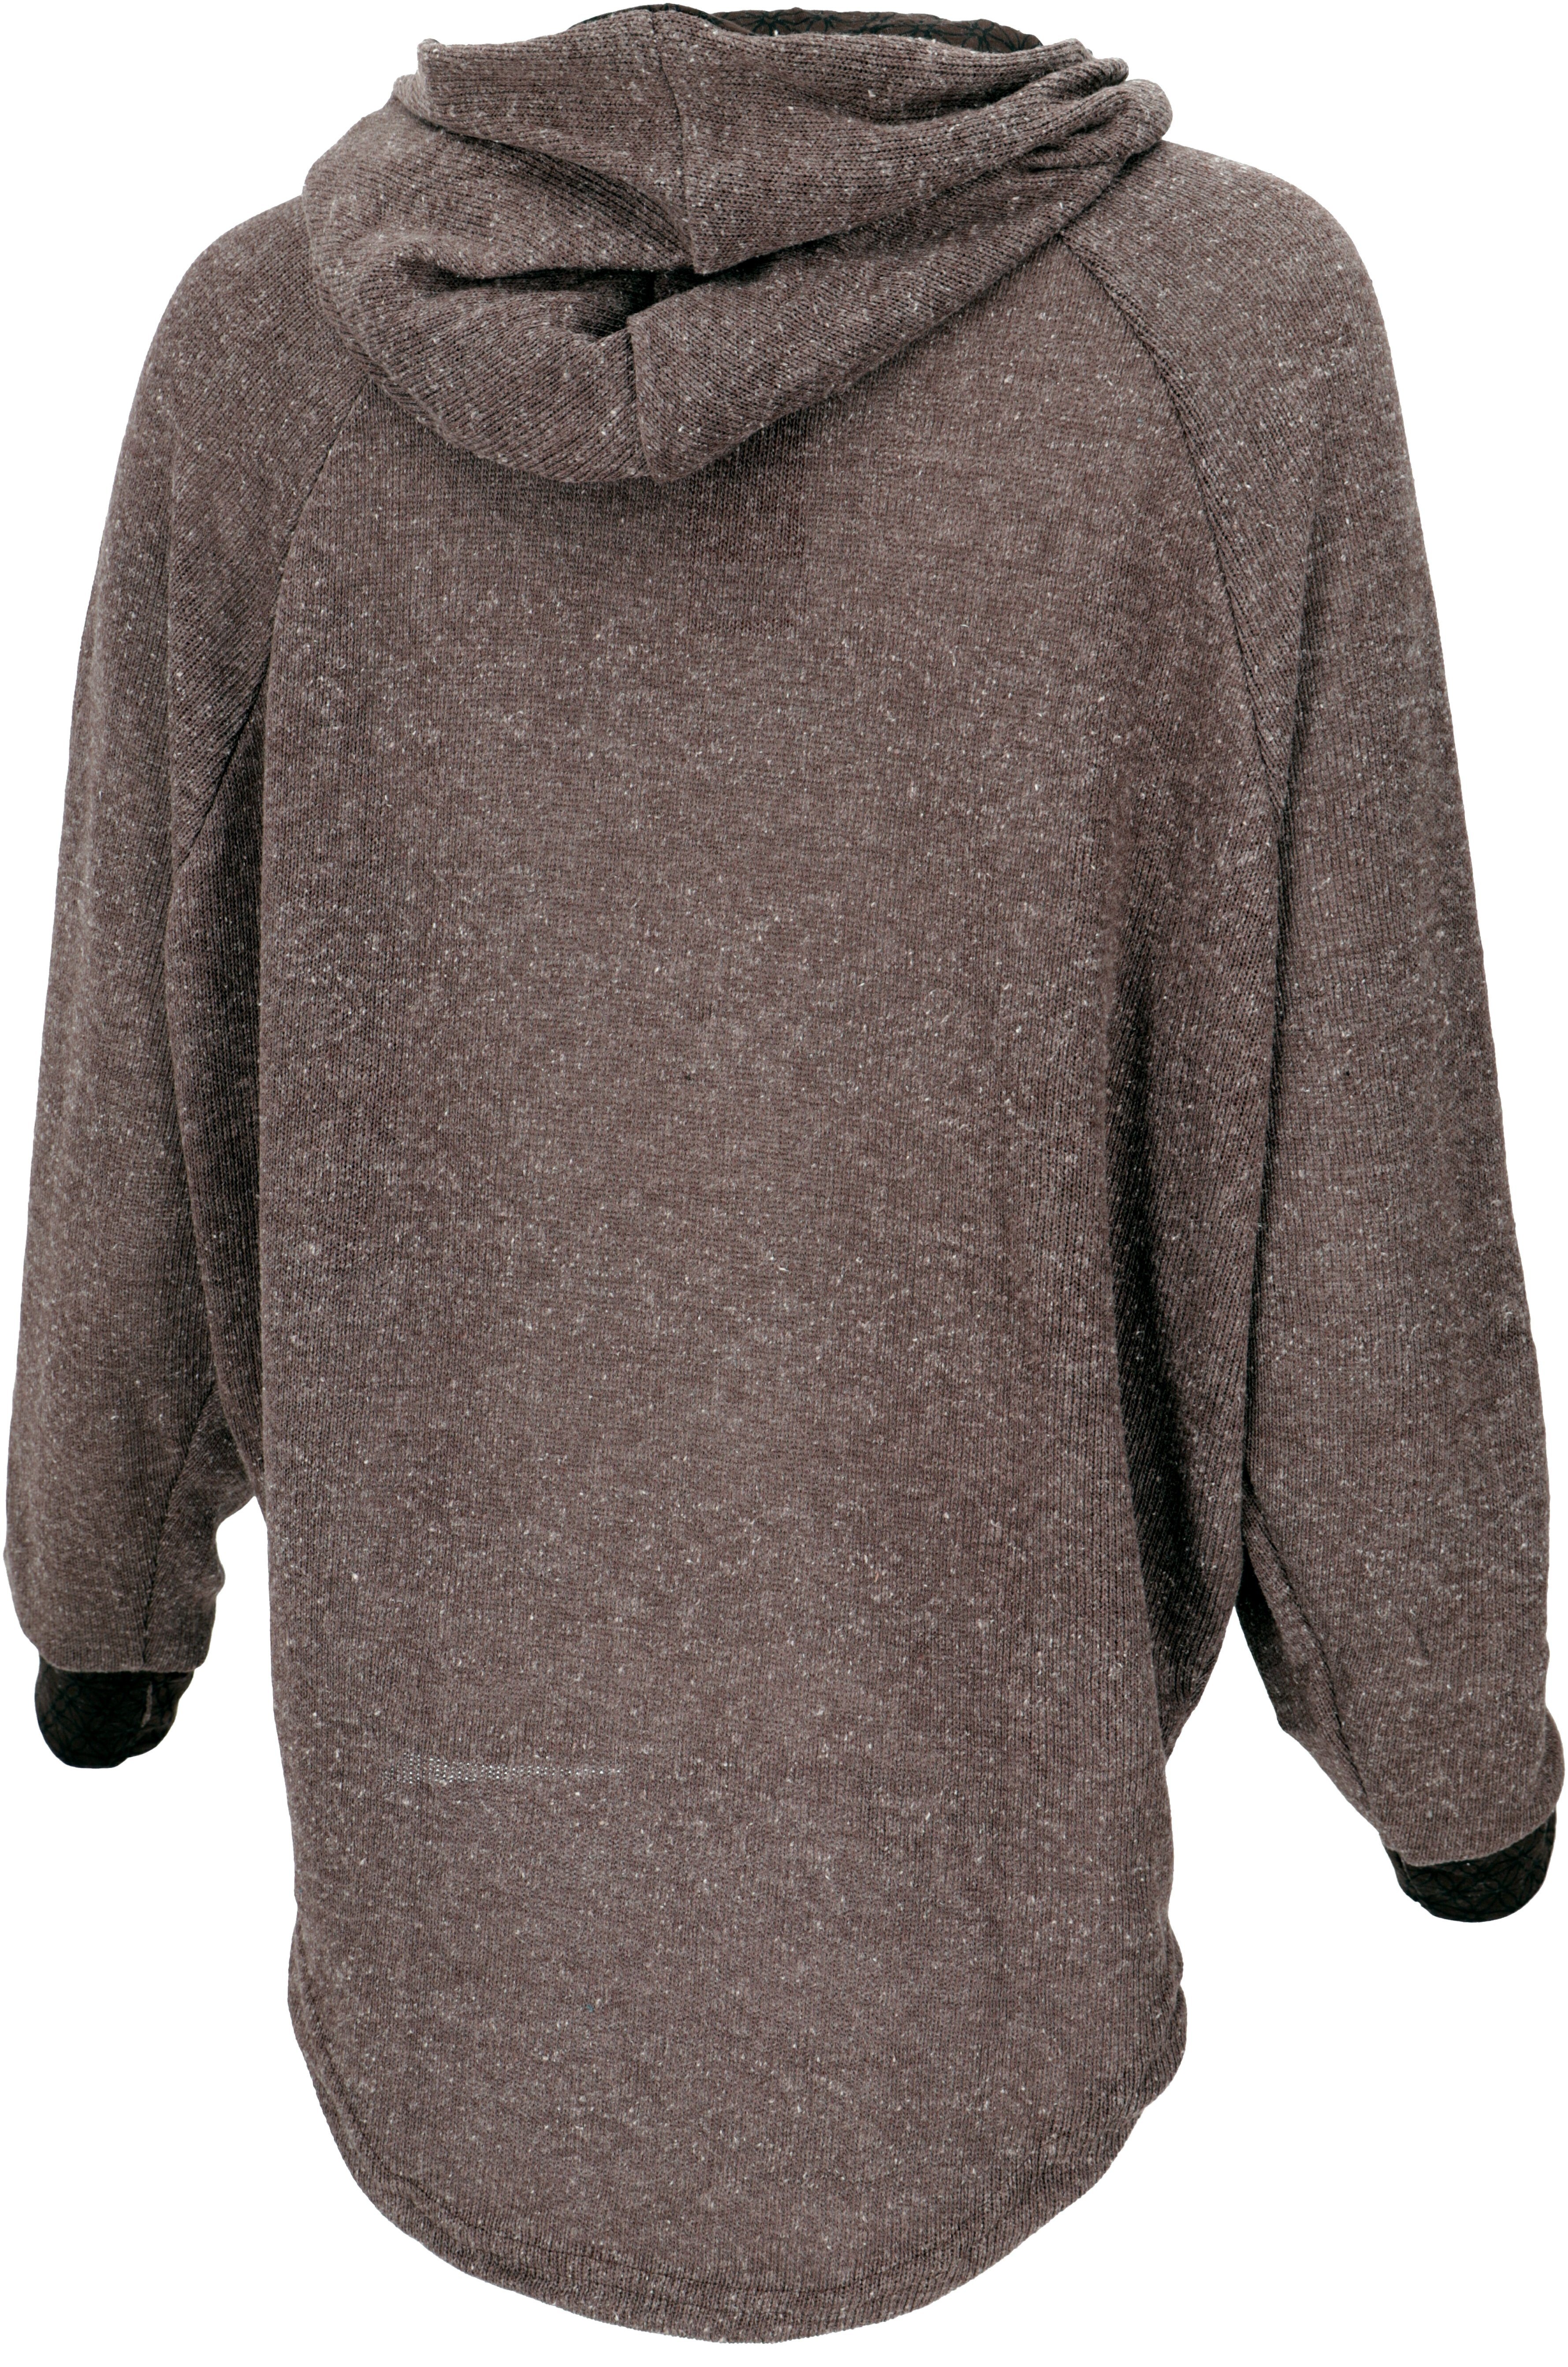 braun alternative Bekleidung Longsleeve -.. Guru-Shop Kapuzenpullover Sweatshirt, Pullover, Hoody,